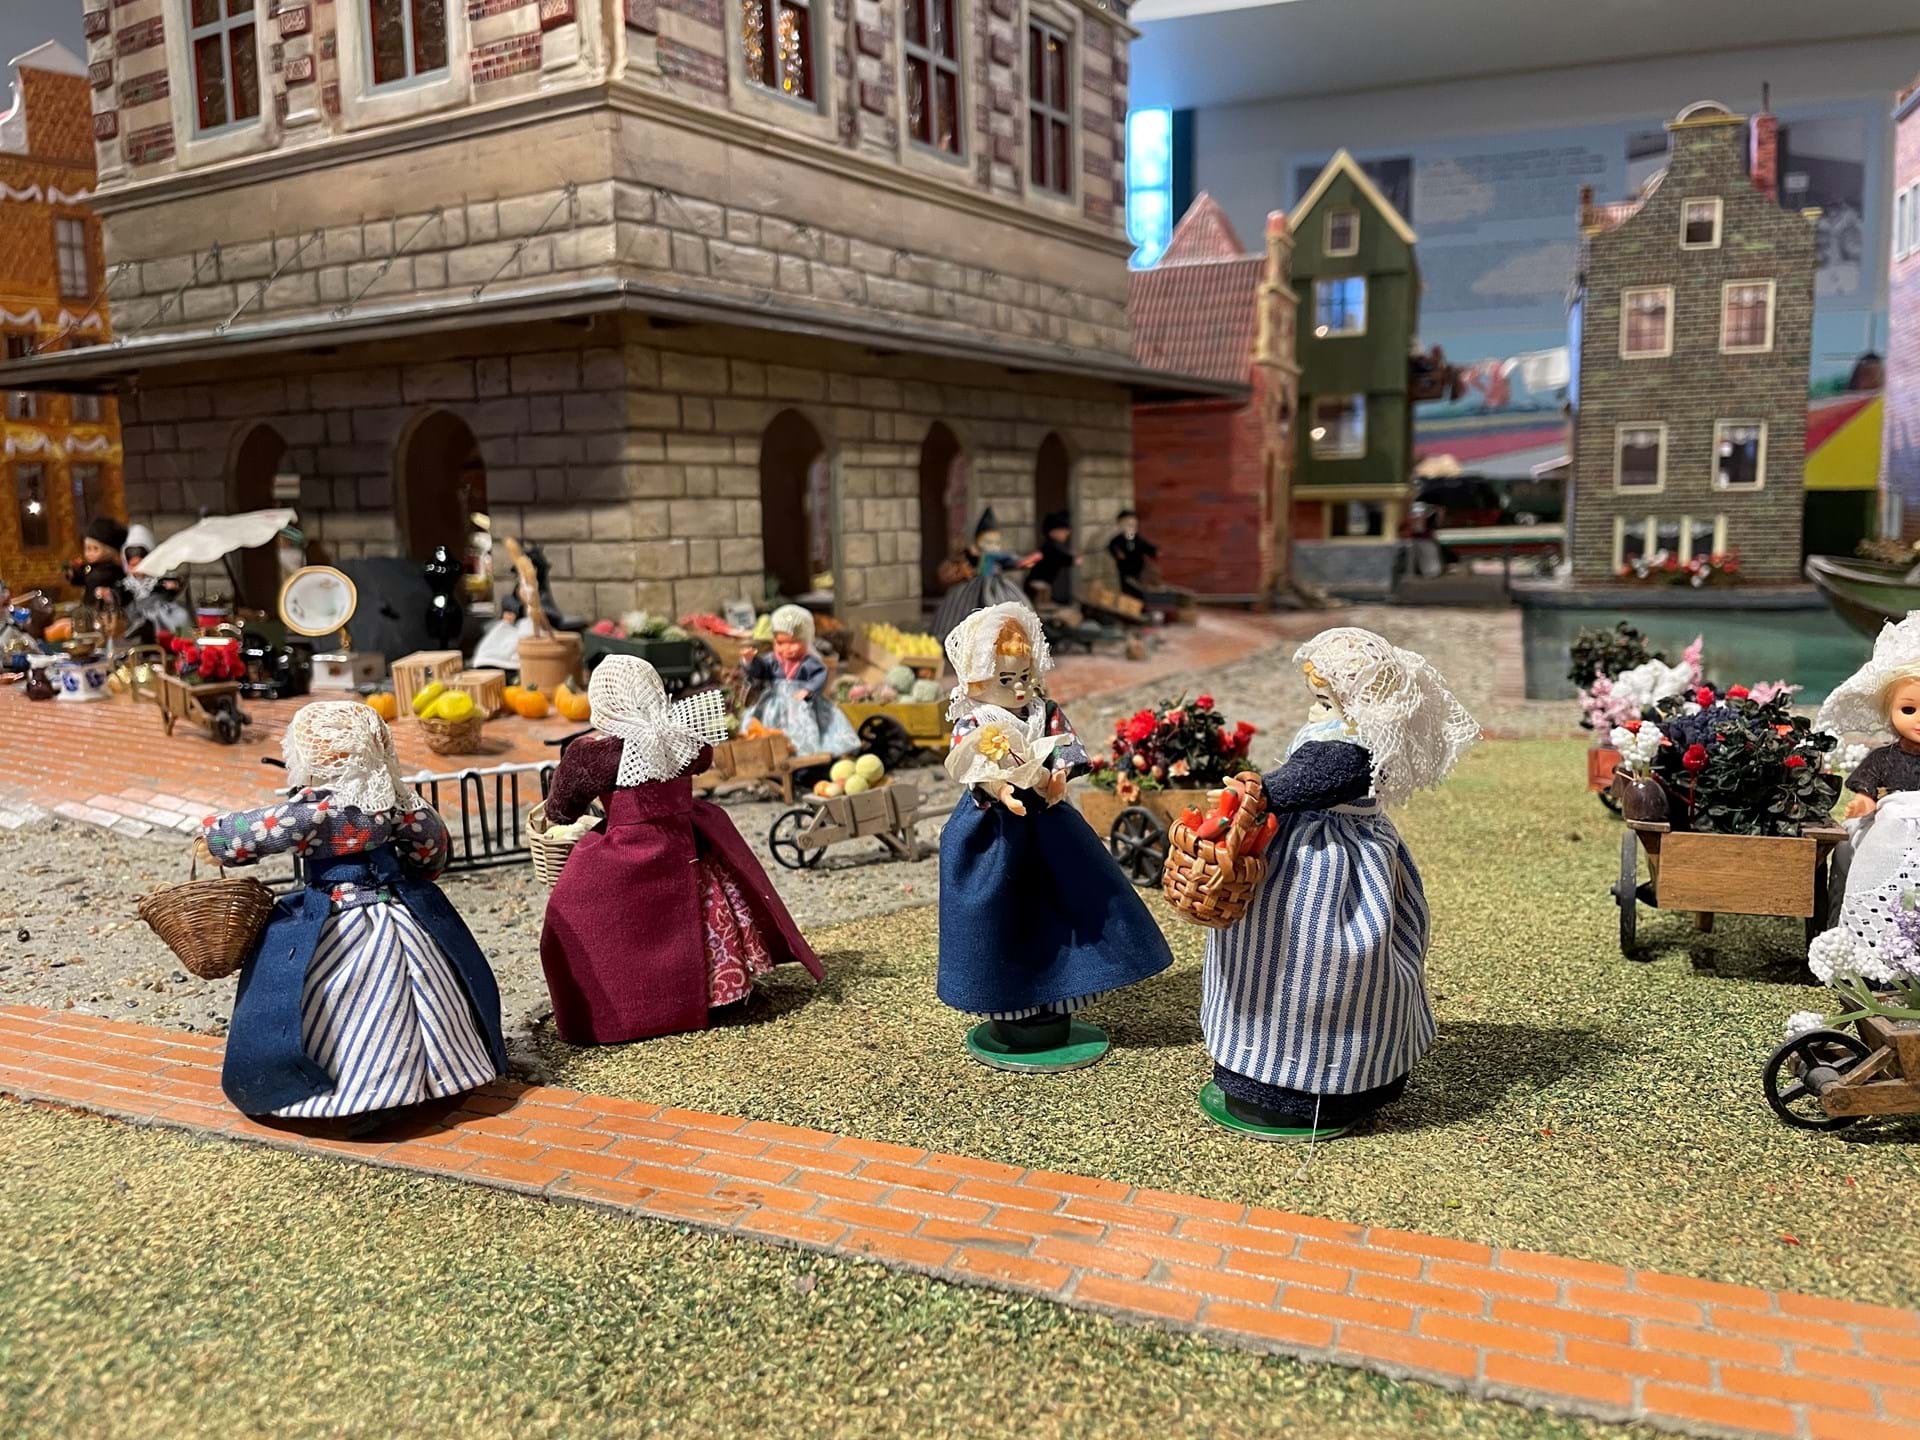 The Miniature Dutch Village is a hidden gem of the Museums.